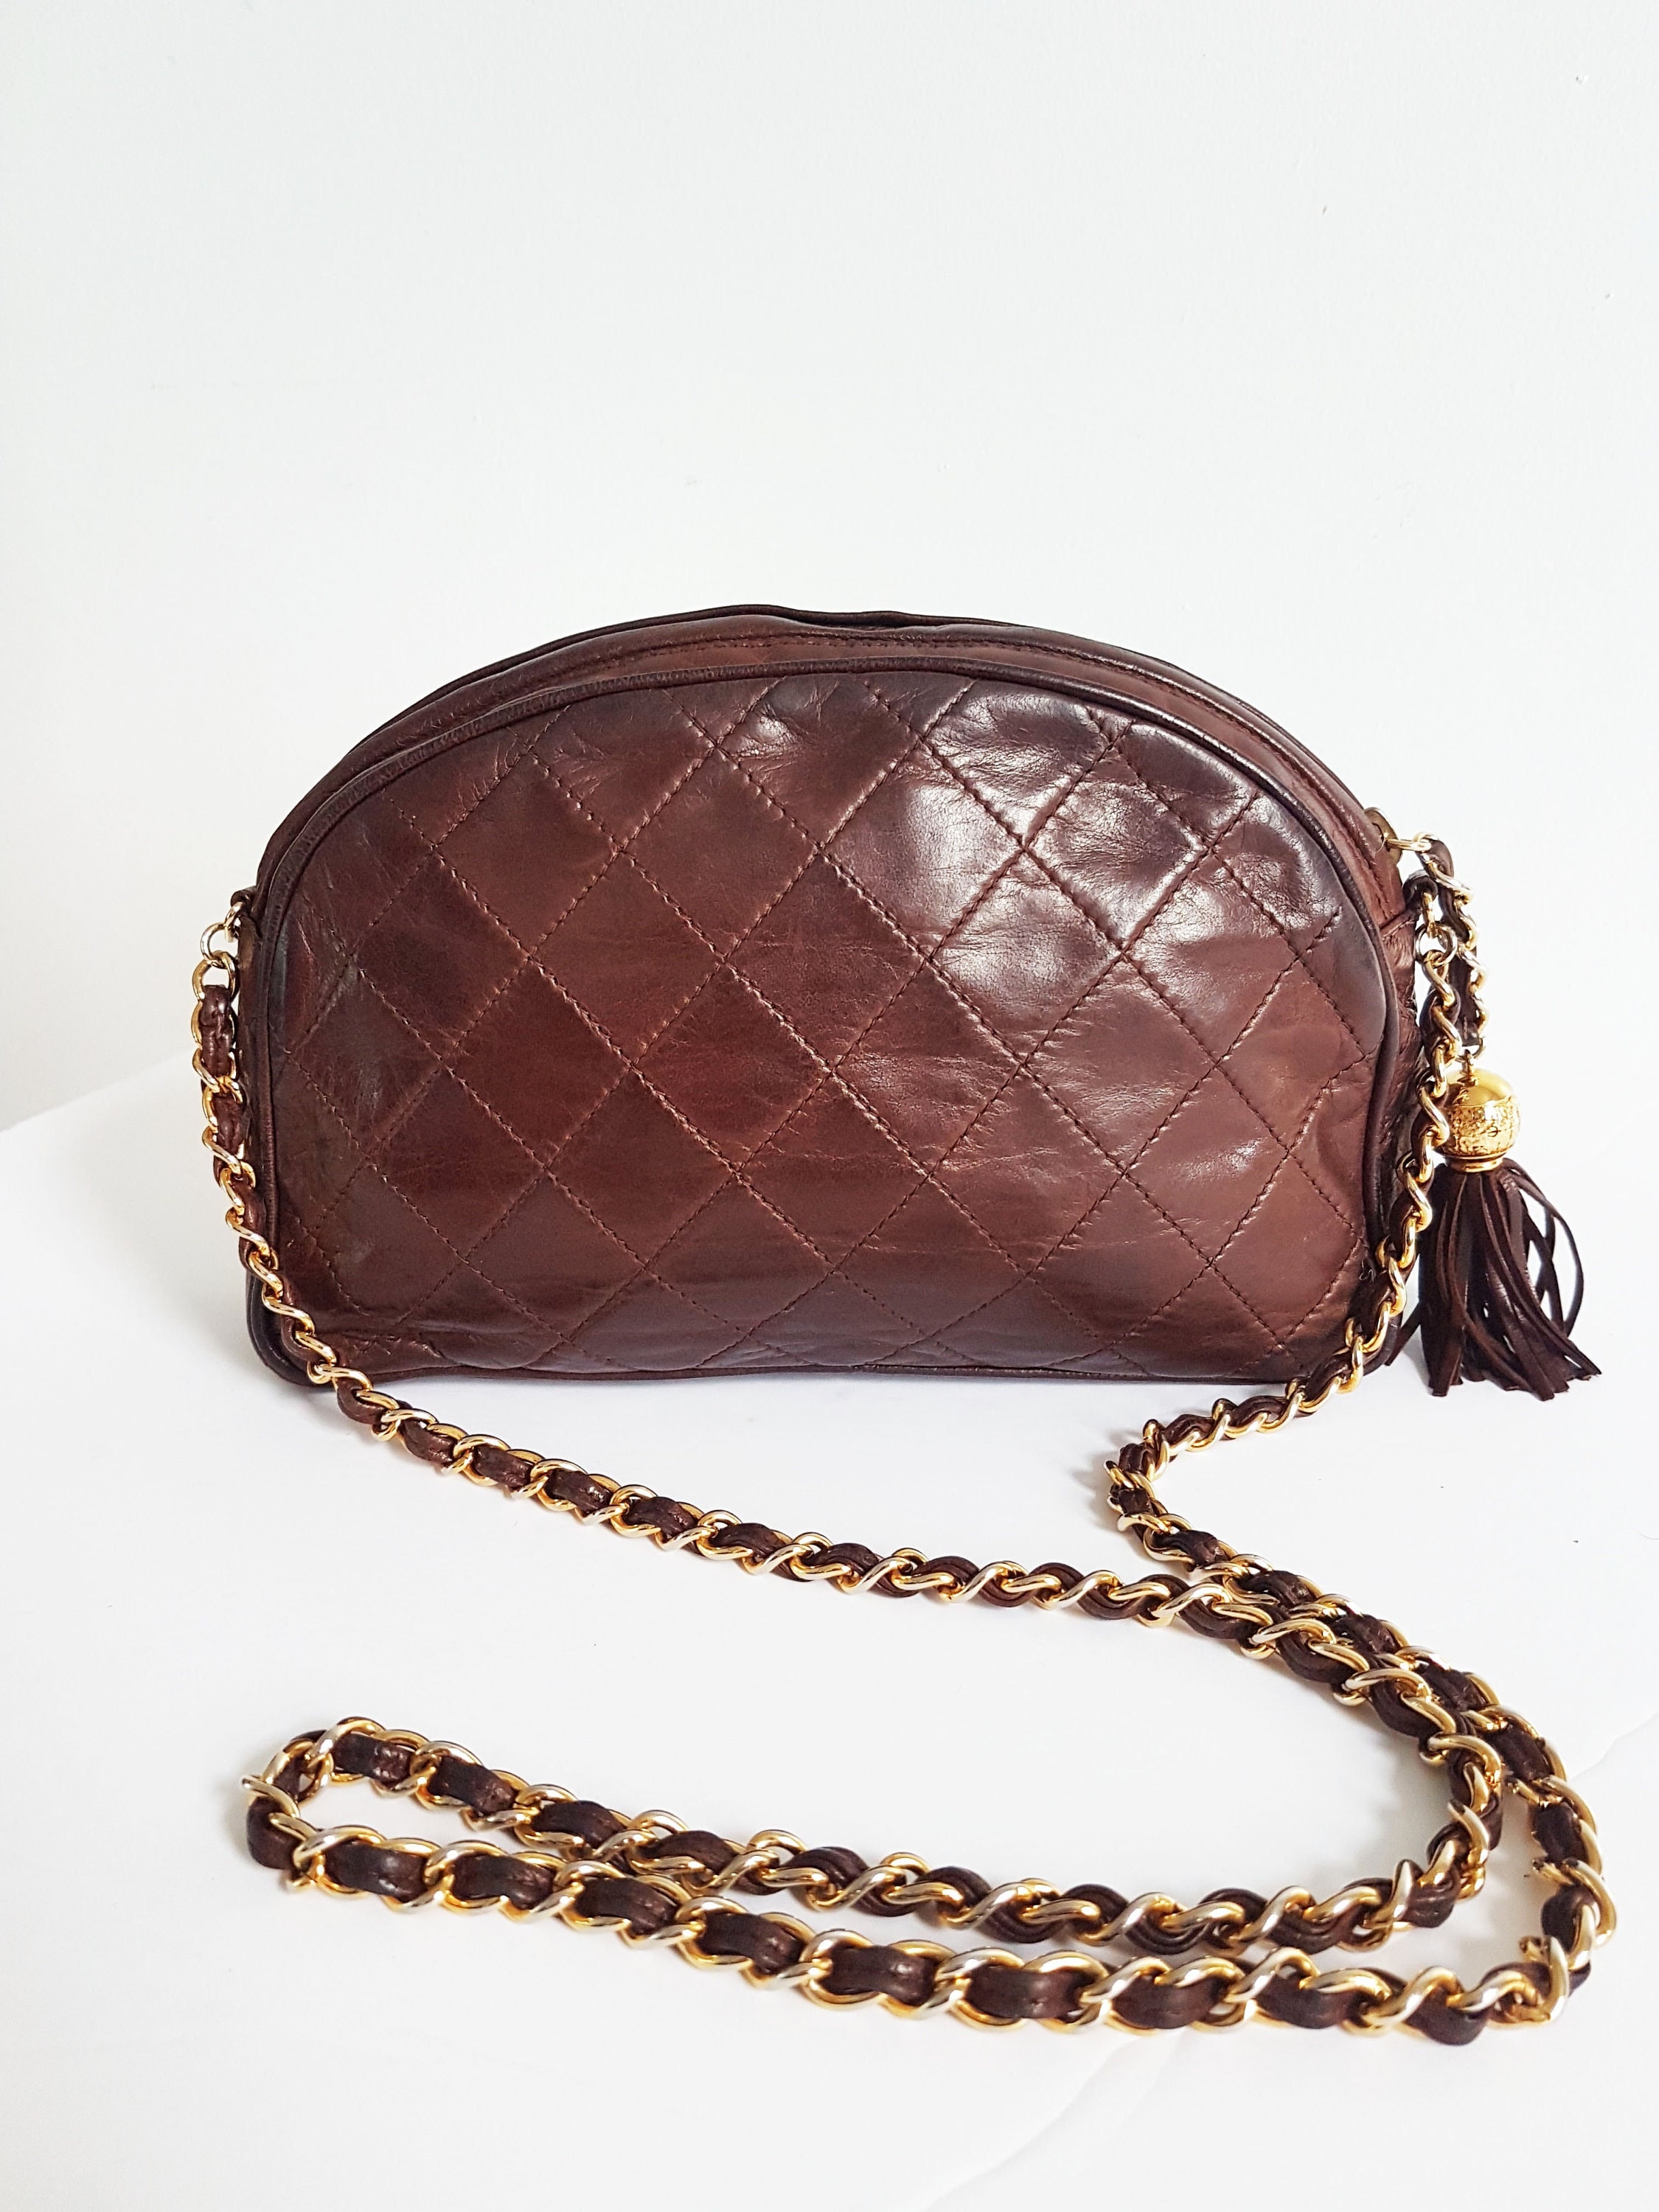 Chanel Rare Bag 